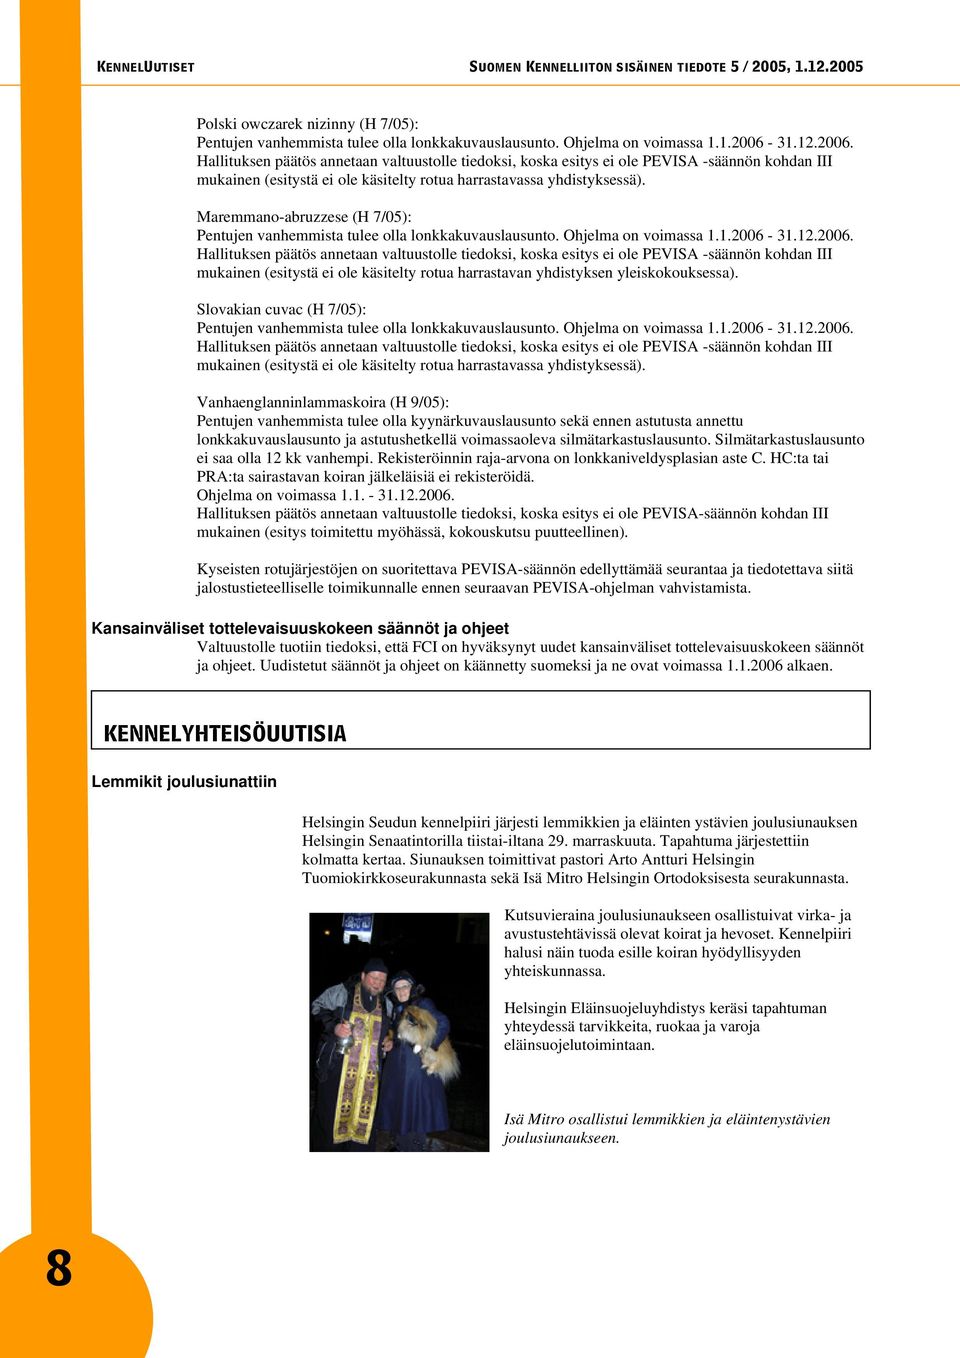 Slovakian cuvac (H 7/05): Pentujen vanhemmista tulee olla lonkkakuvauslausunto. Ohjelma on voimassa 1.1.2006-31.12.2006. mukainen (esitystä ei ole käsitelty rotua harrastavassa yhdistyksessä).